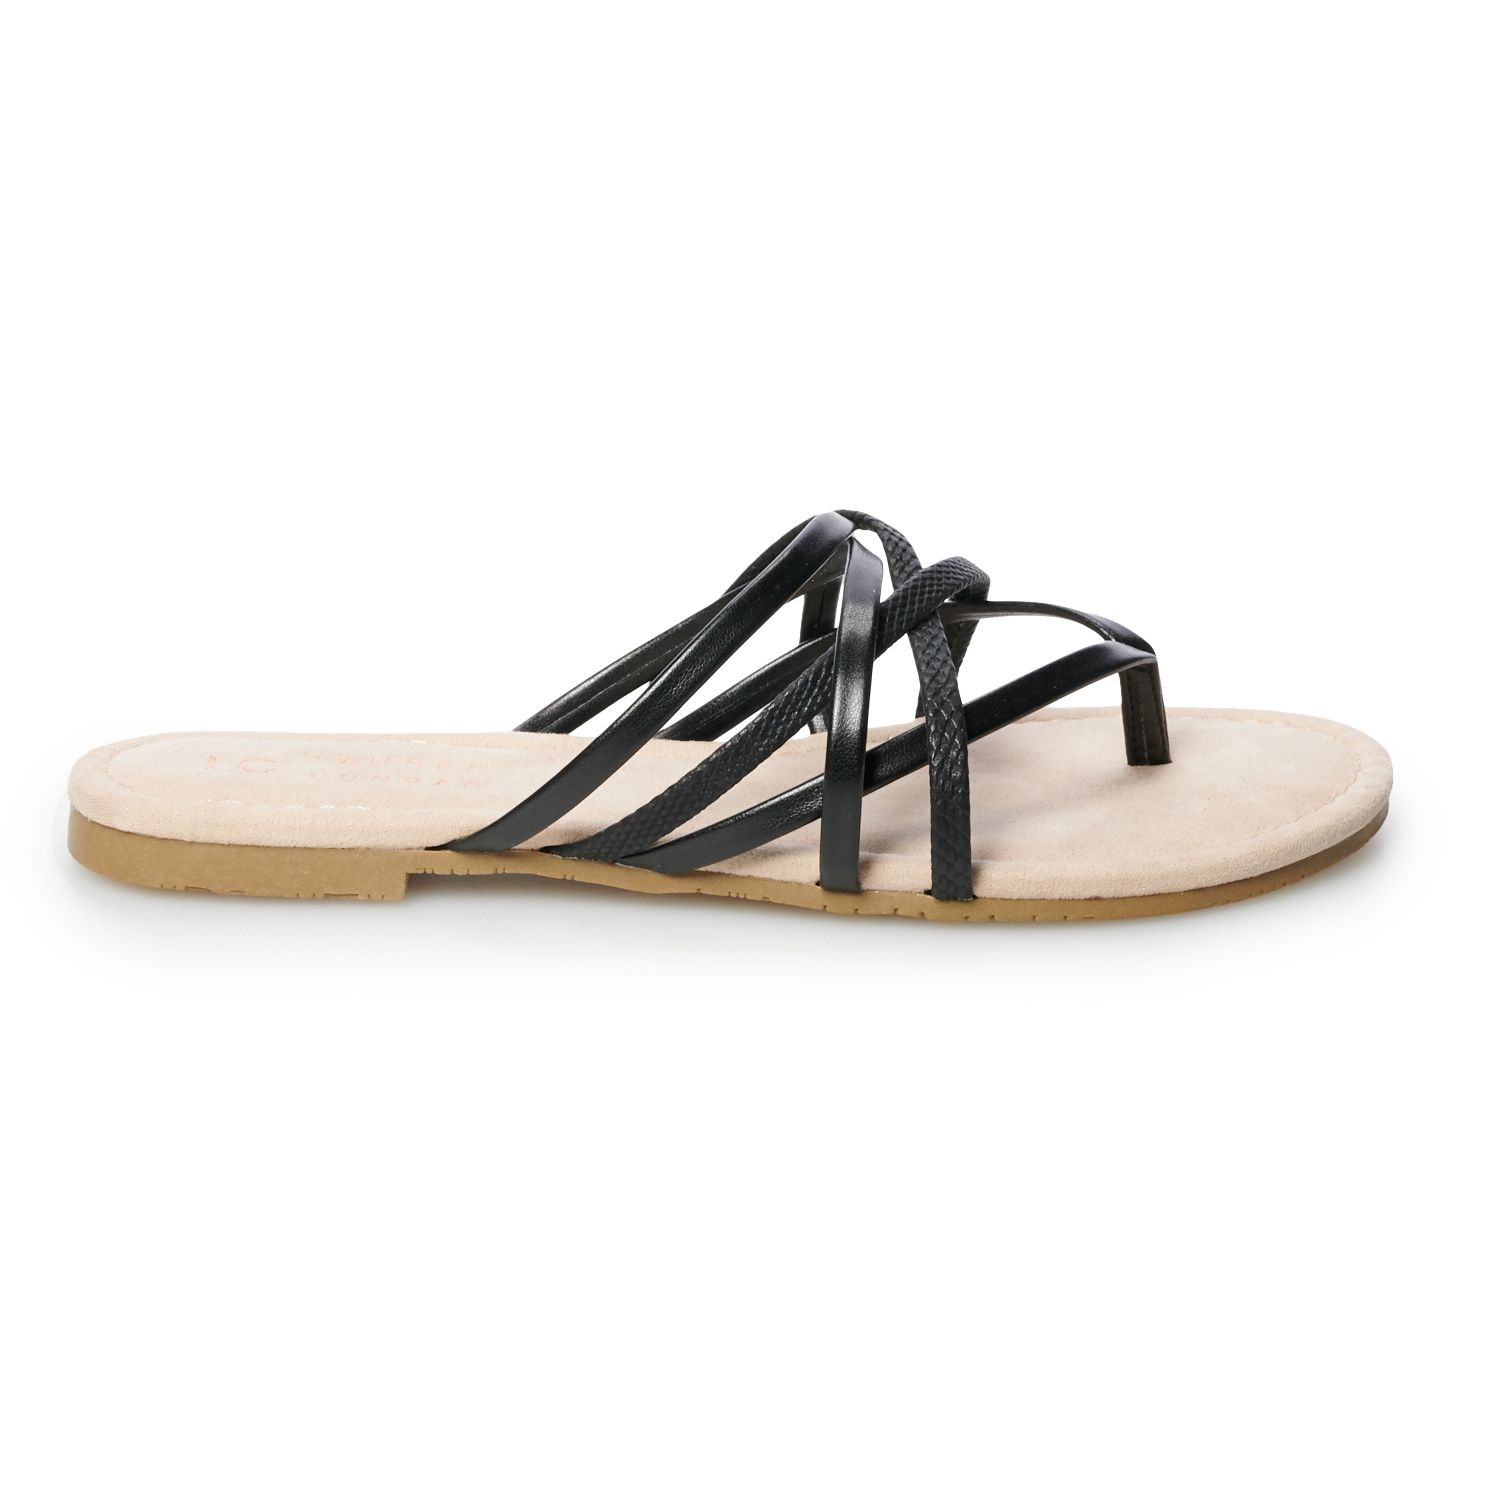 lauren conrad slide sandals